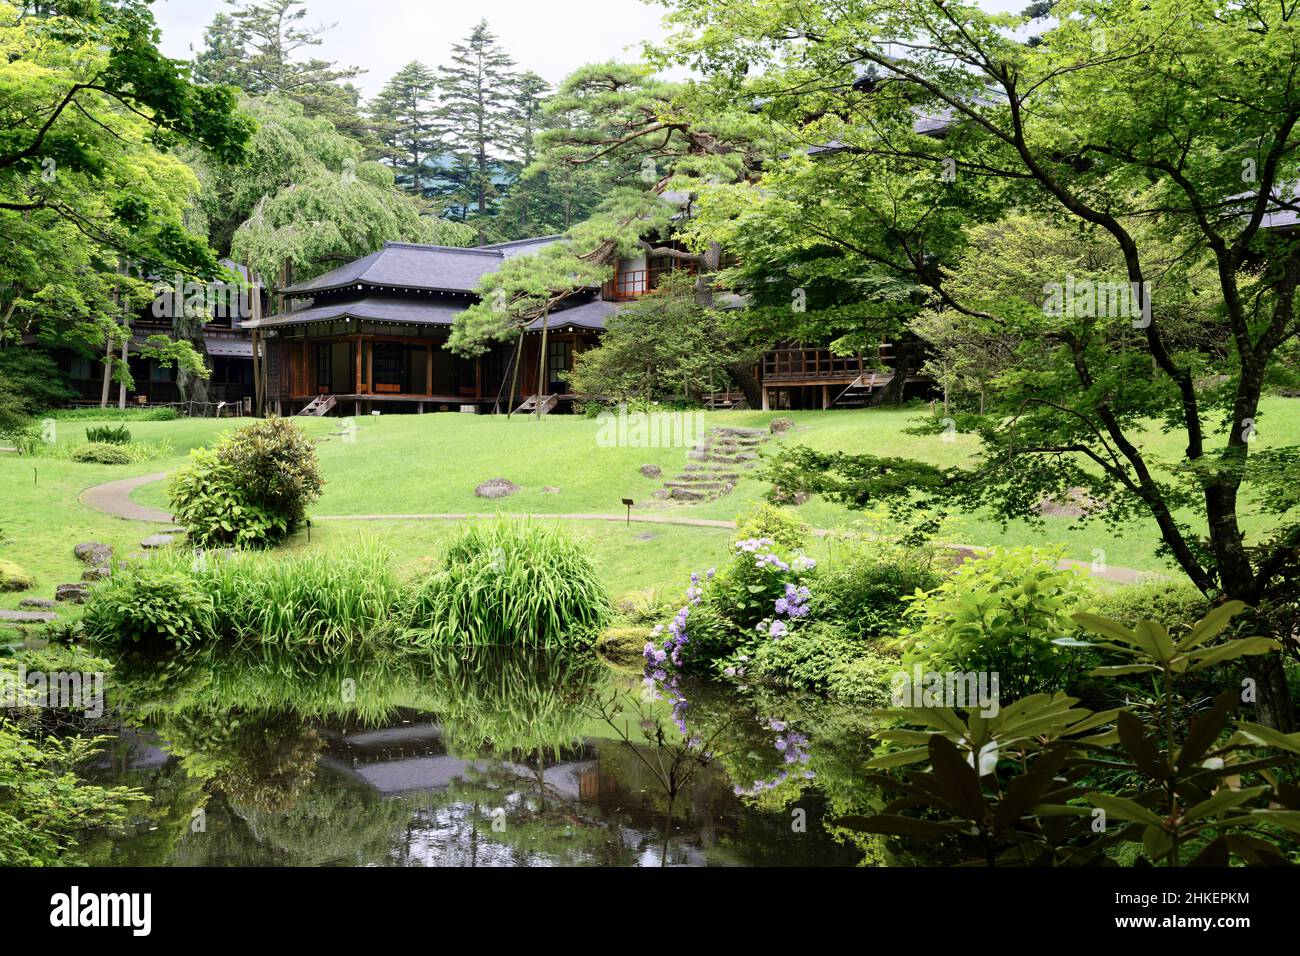 Garden of the Tamozawa Imperial Villa in Nikko, Japan. Stock Photo